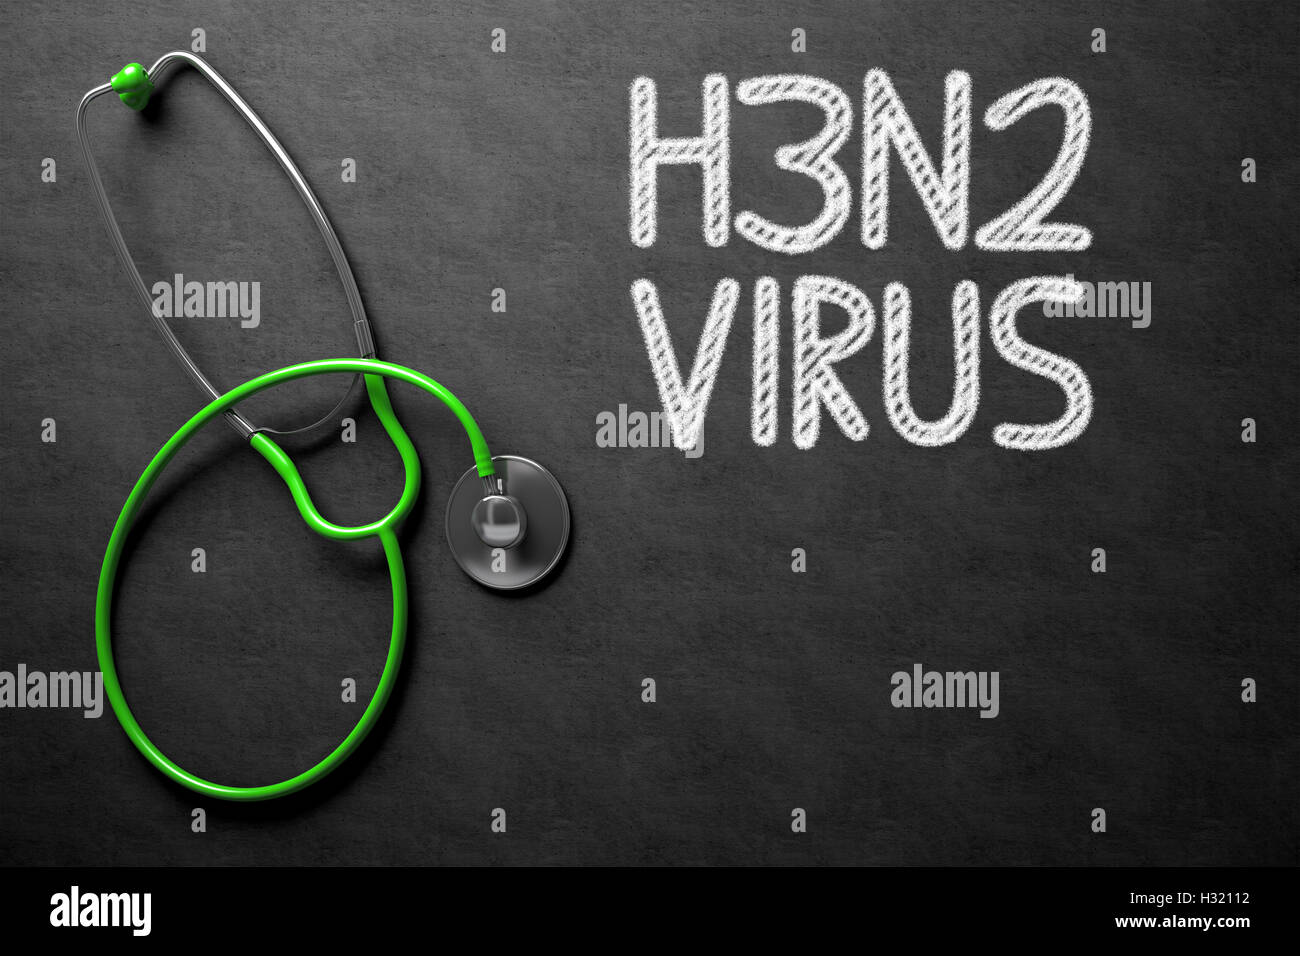 Lavagna con H3N2. 3D'illustrazione. Foto Stock